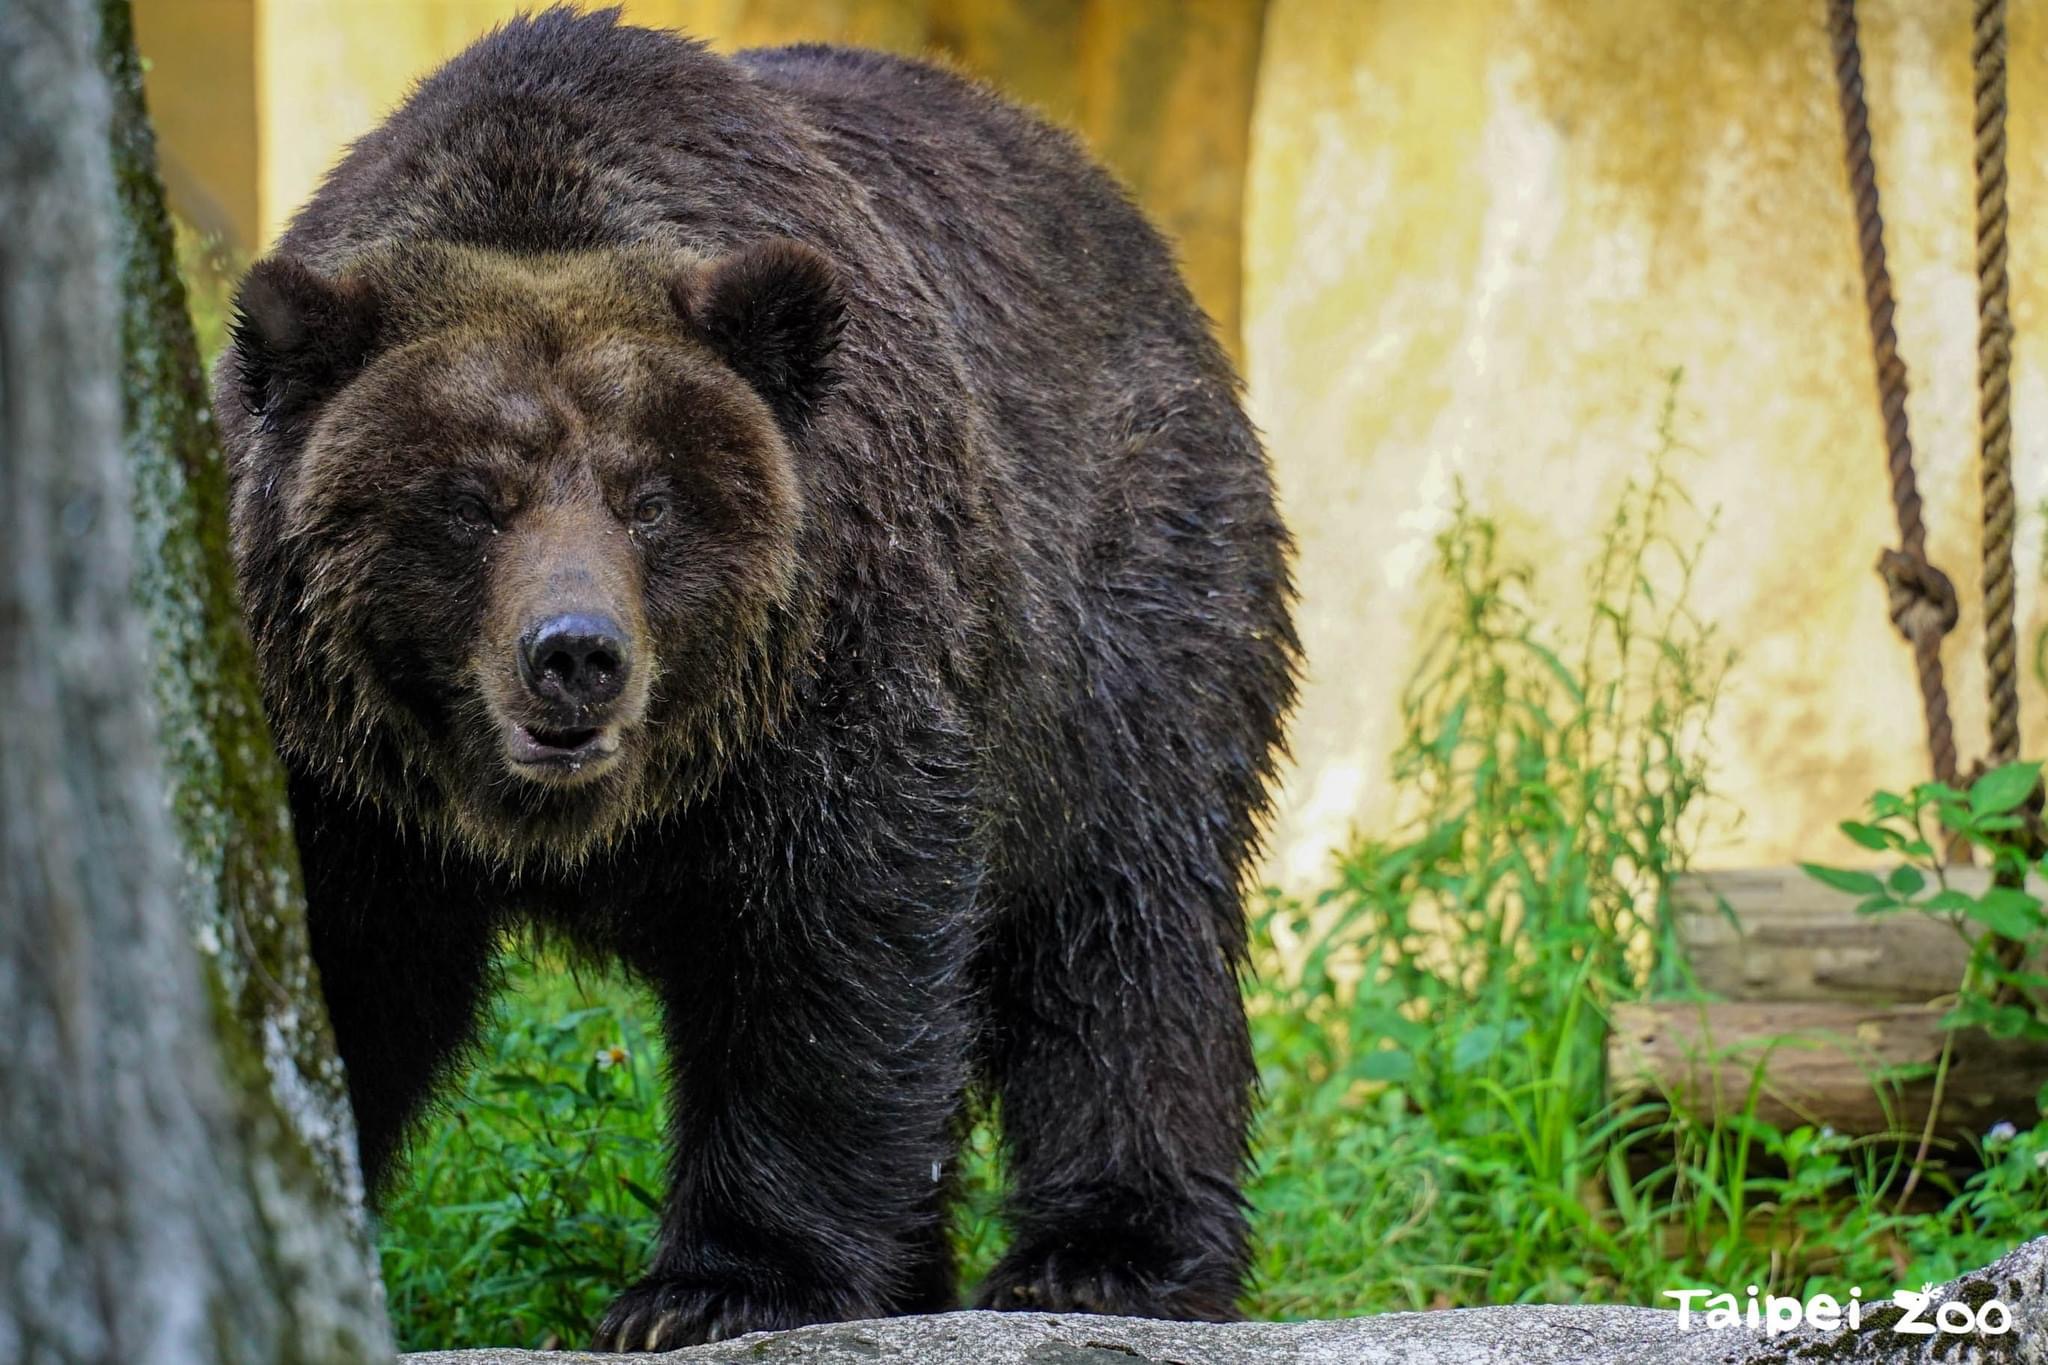 台北市立动物园唯一一只棕熊「小乔」，因近期进食状况不佳，照养团队为观察投药治疗状态，暂时将小乔留在室内观察。图／台北市立动物园提供